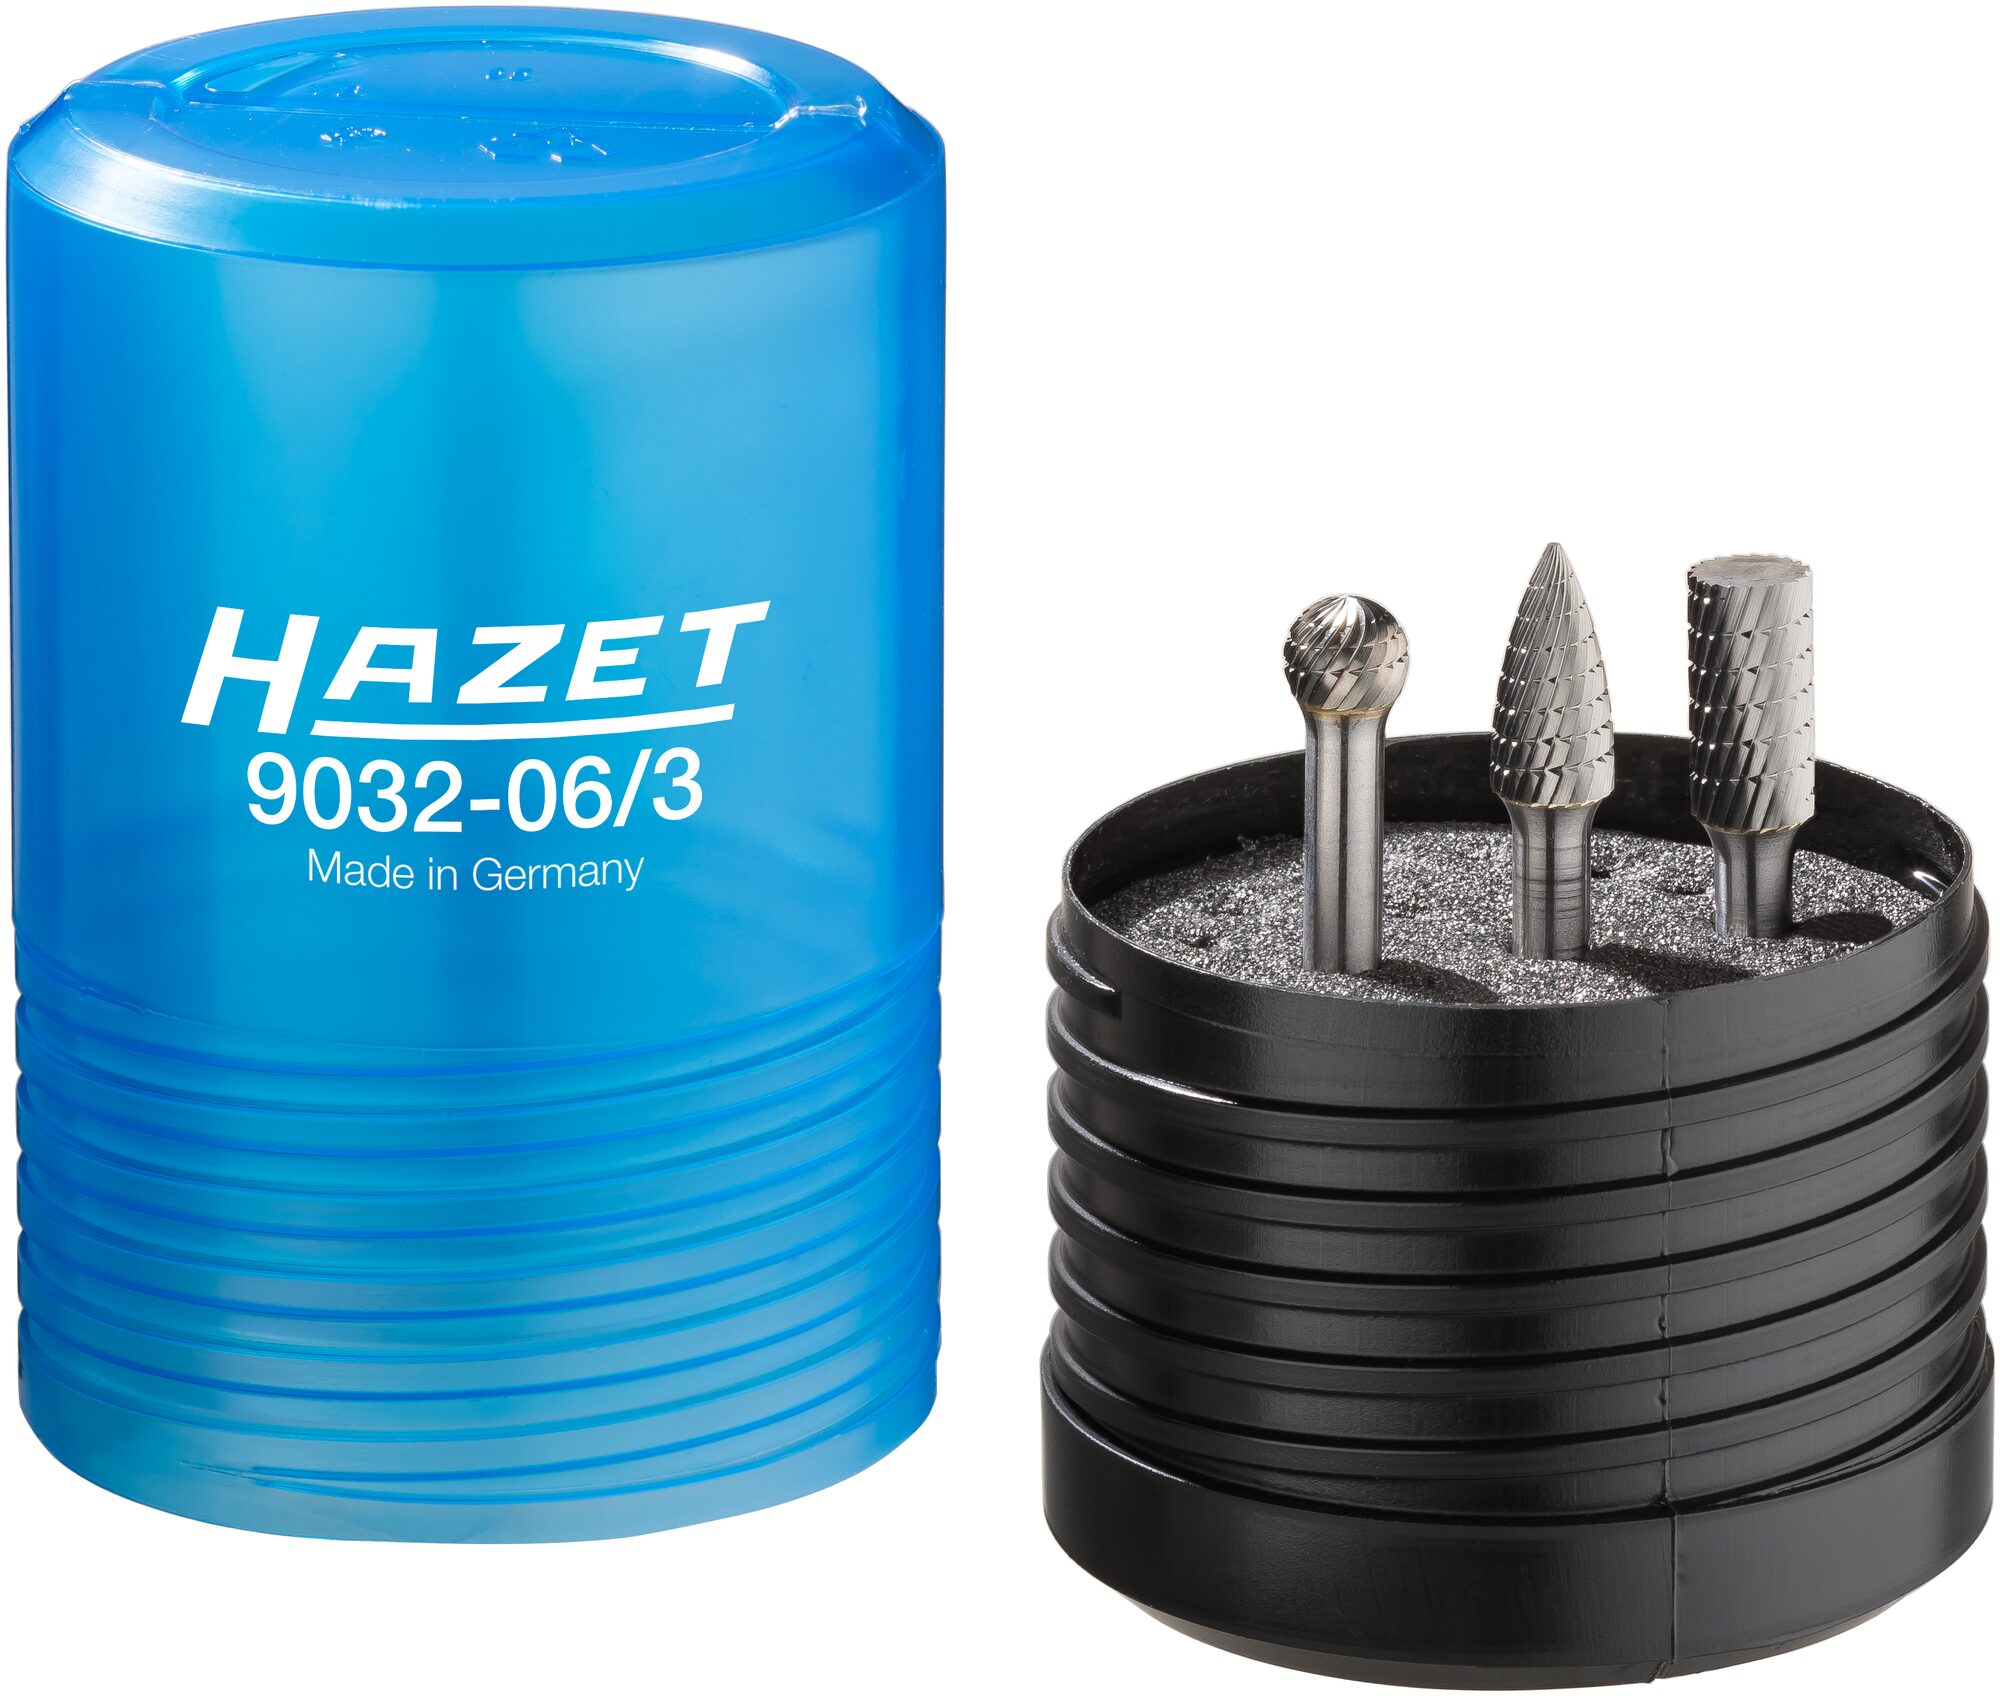 HAZET Hartmetall Frässtift Satz · 6 mm 9032-06/3 · Anzahl Werkzeuge: 3